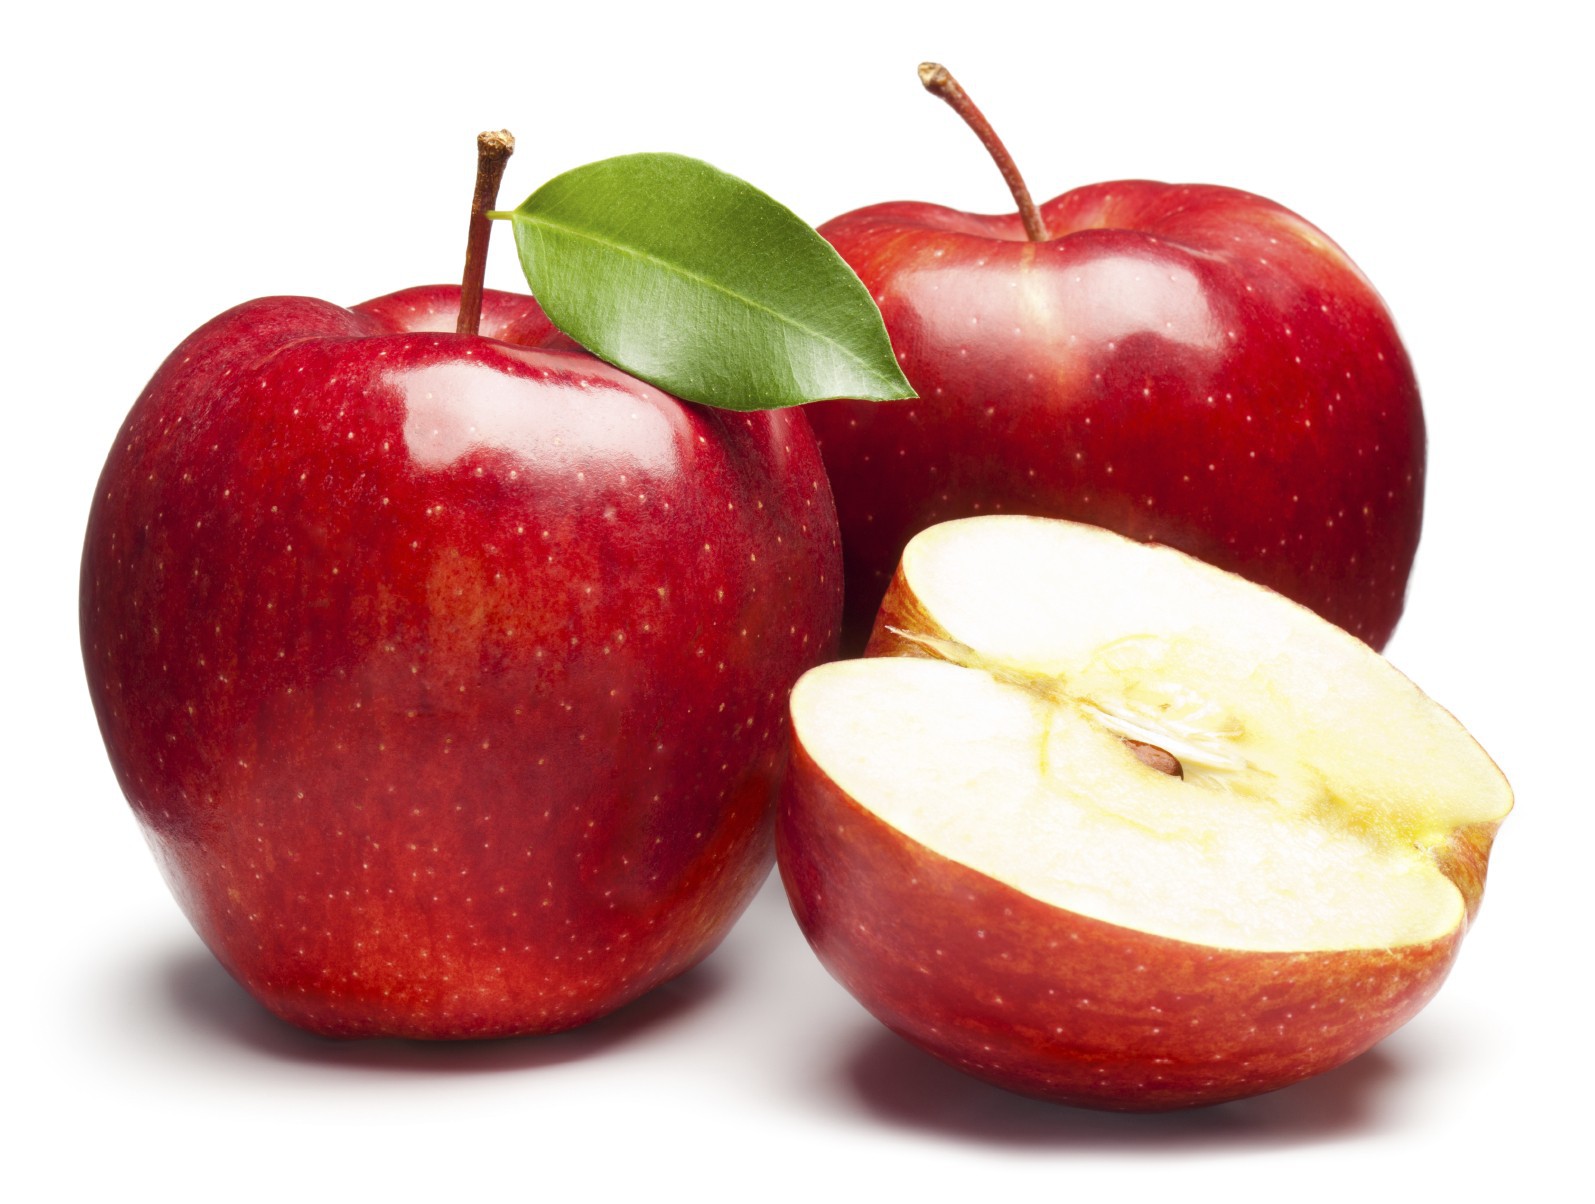 Răsuflăm uşuraţi: Putem mânca mere. Autoritatea Naţională Fitosanitară: „Produsele agroalimentare existente pe piaţă la această oră sunt sigure pentru consum”